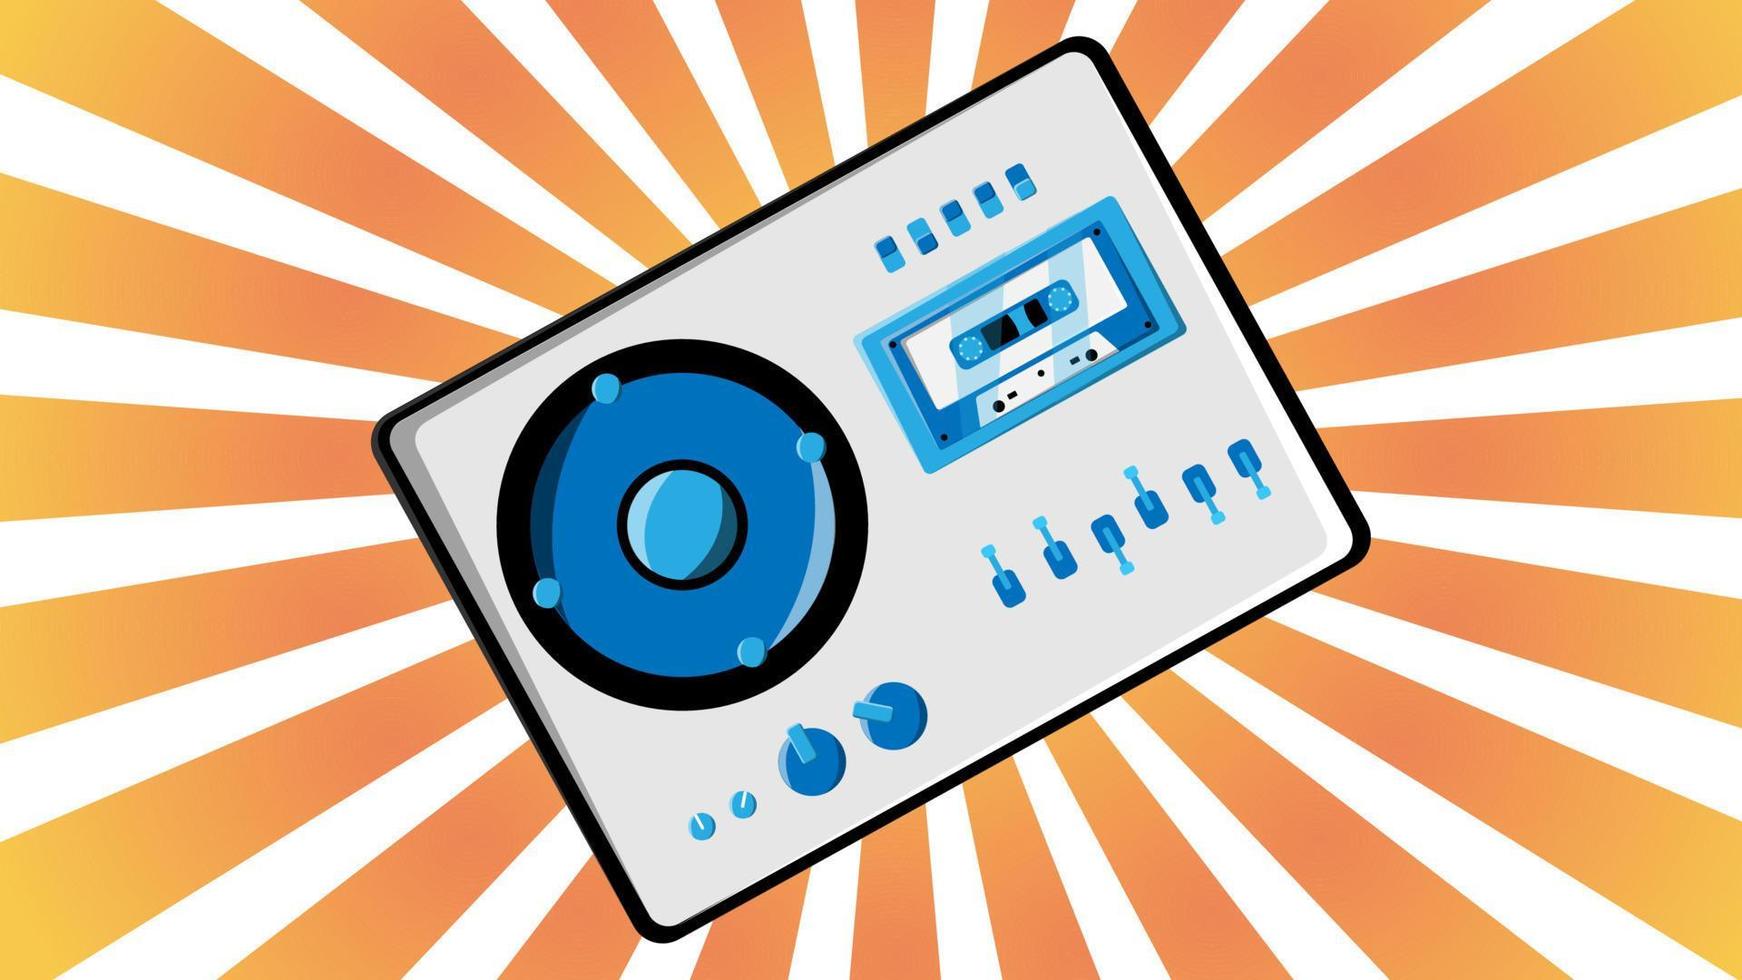 antigua grabadora de cinta de casete de música retro vintage con babbin de cinta magnética en carretes y altavoces de los años 70, 80, 90 contra el fondo de los rayos naranjas del sol. ilustración vectorial vector